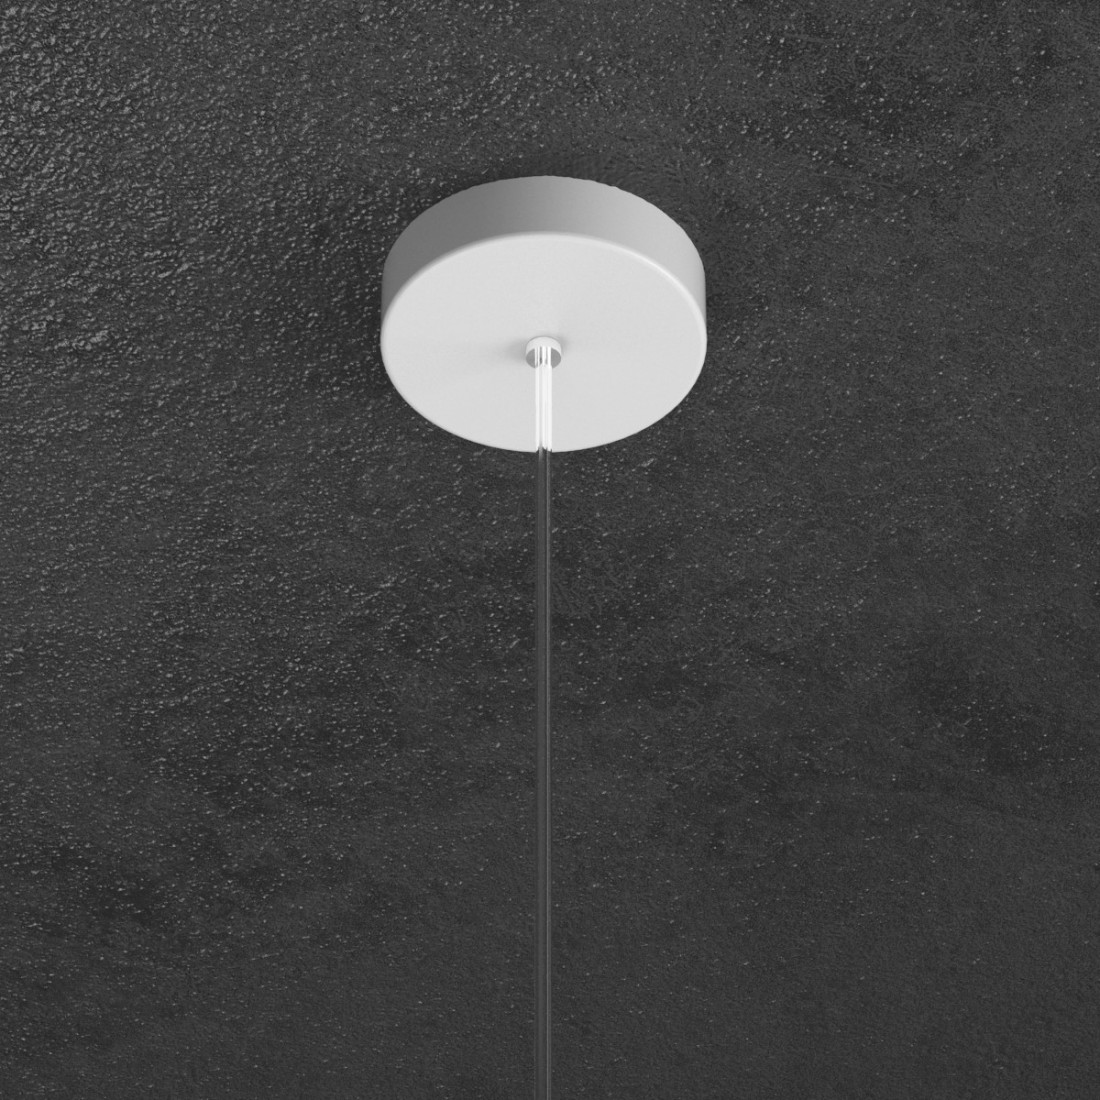 Sospensione TP-SHAPE 1143 S25 GX53 LED metallo bianco grigio sabbia lampada parete cilindro moderna interno